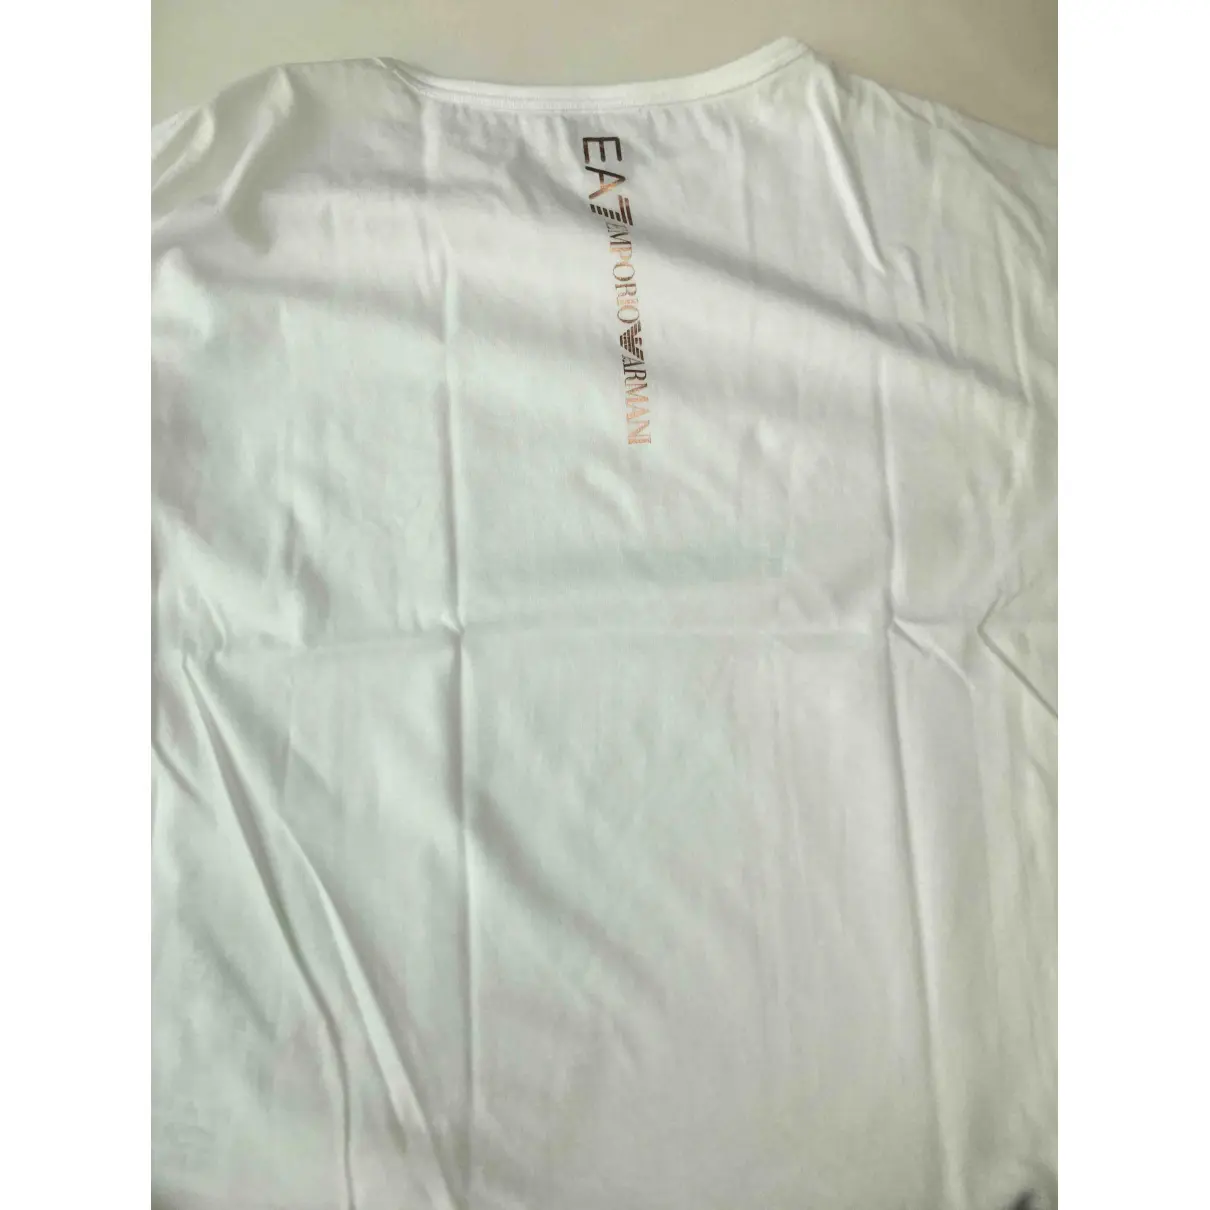 Emporio Armani White Cotton Top for sale